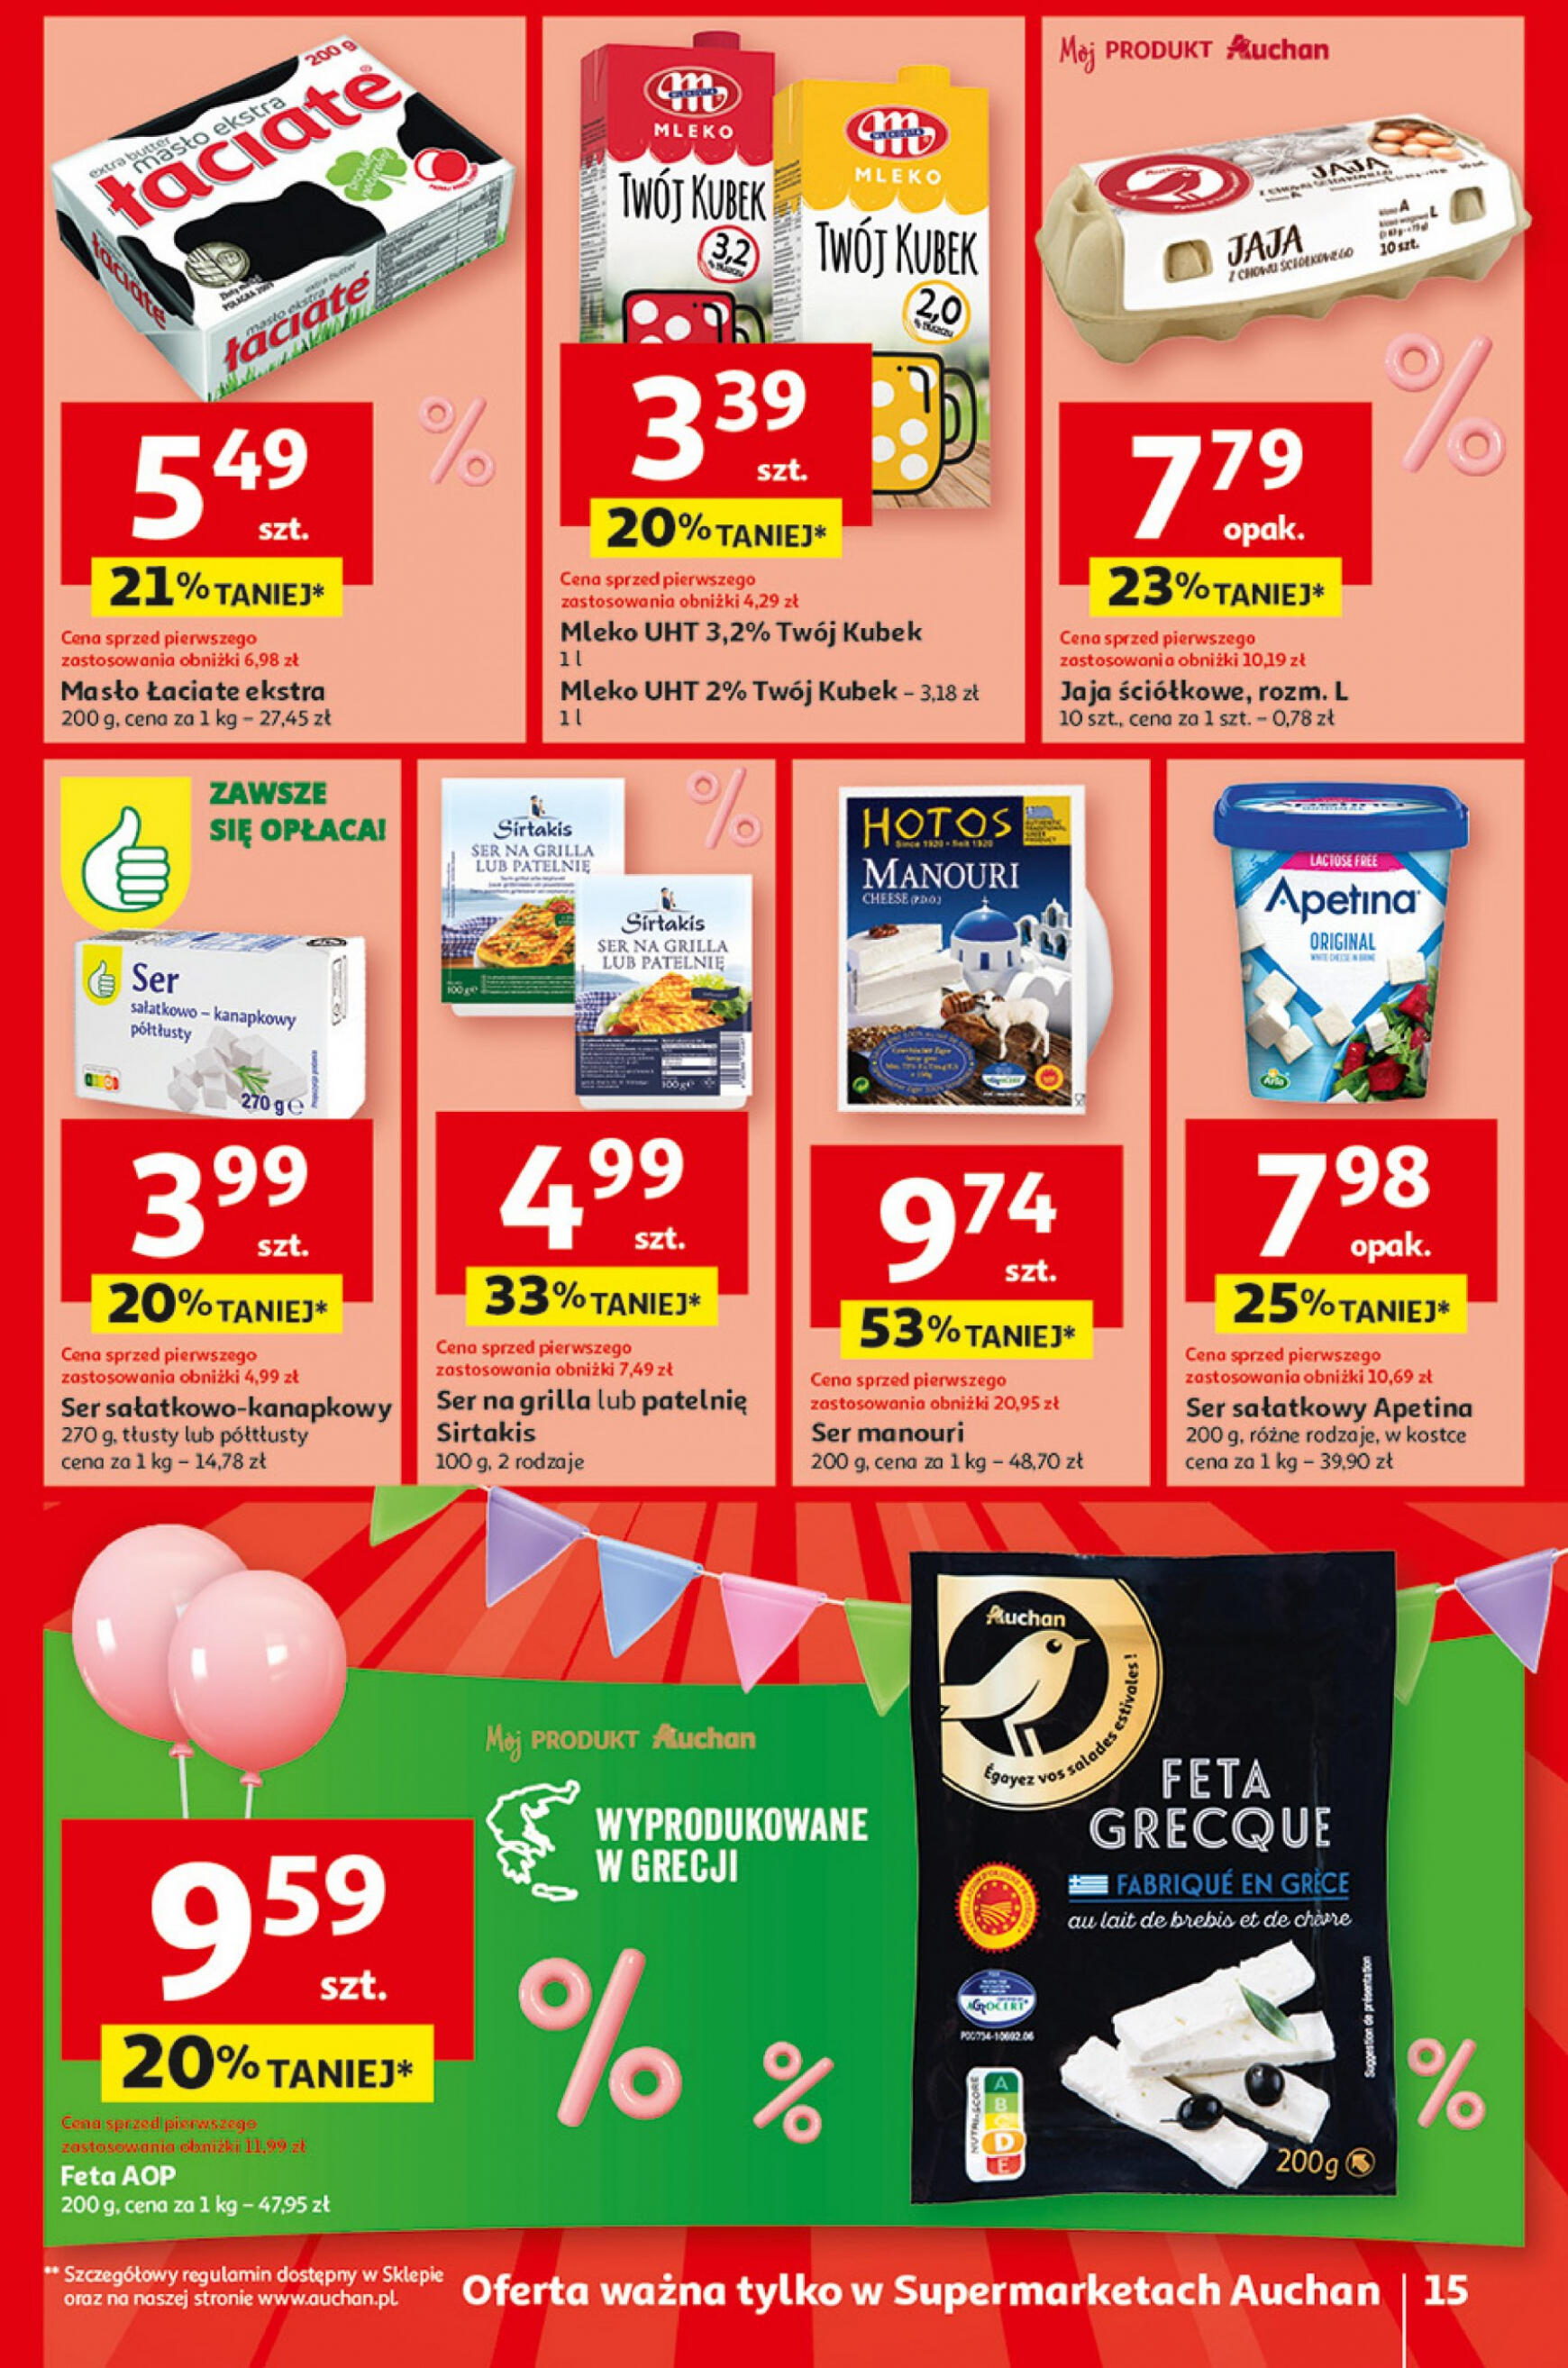 auchan - Supermarket Auchan - Gazetka Jeszcze taniej na urodziny gazetka aktualna ważna od 02.05. - 08.05. - page: 15